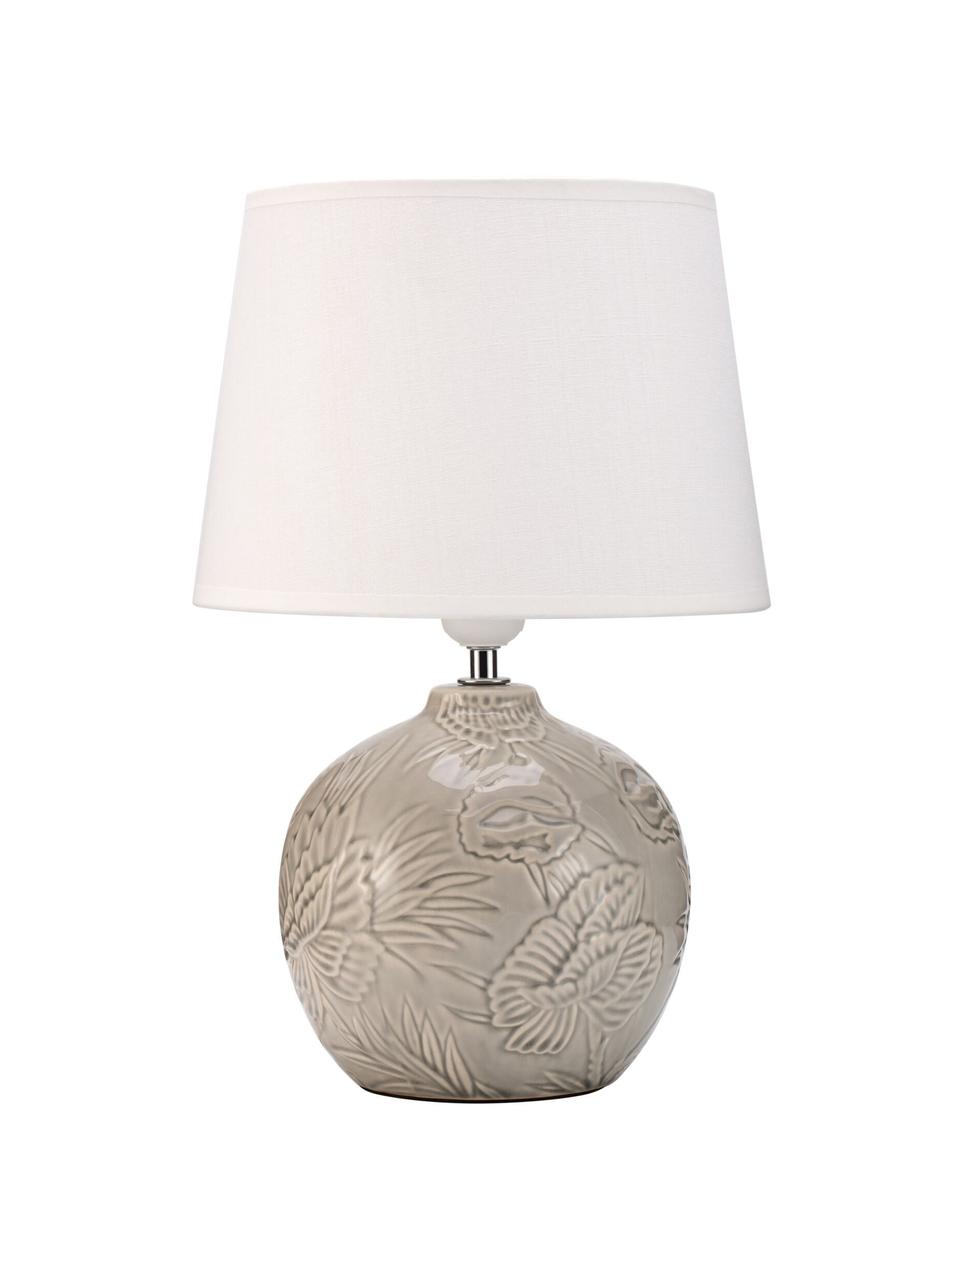 Tafellamp Tender Love in greige, Lampenkap: stof, Lampvoet: keramiek, Wit, greige, Ø 25 x H 37 cm